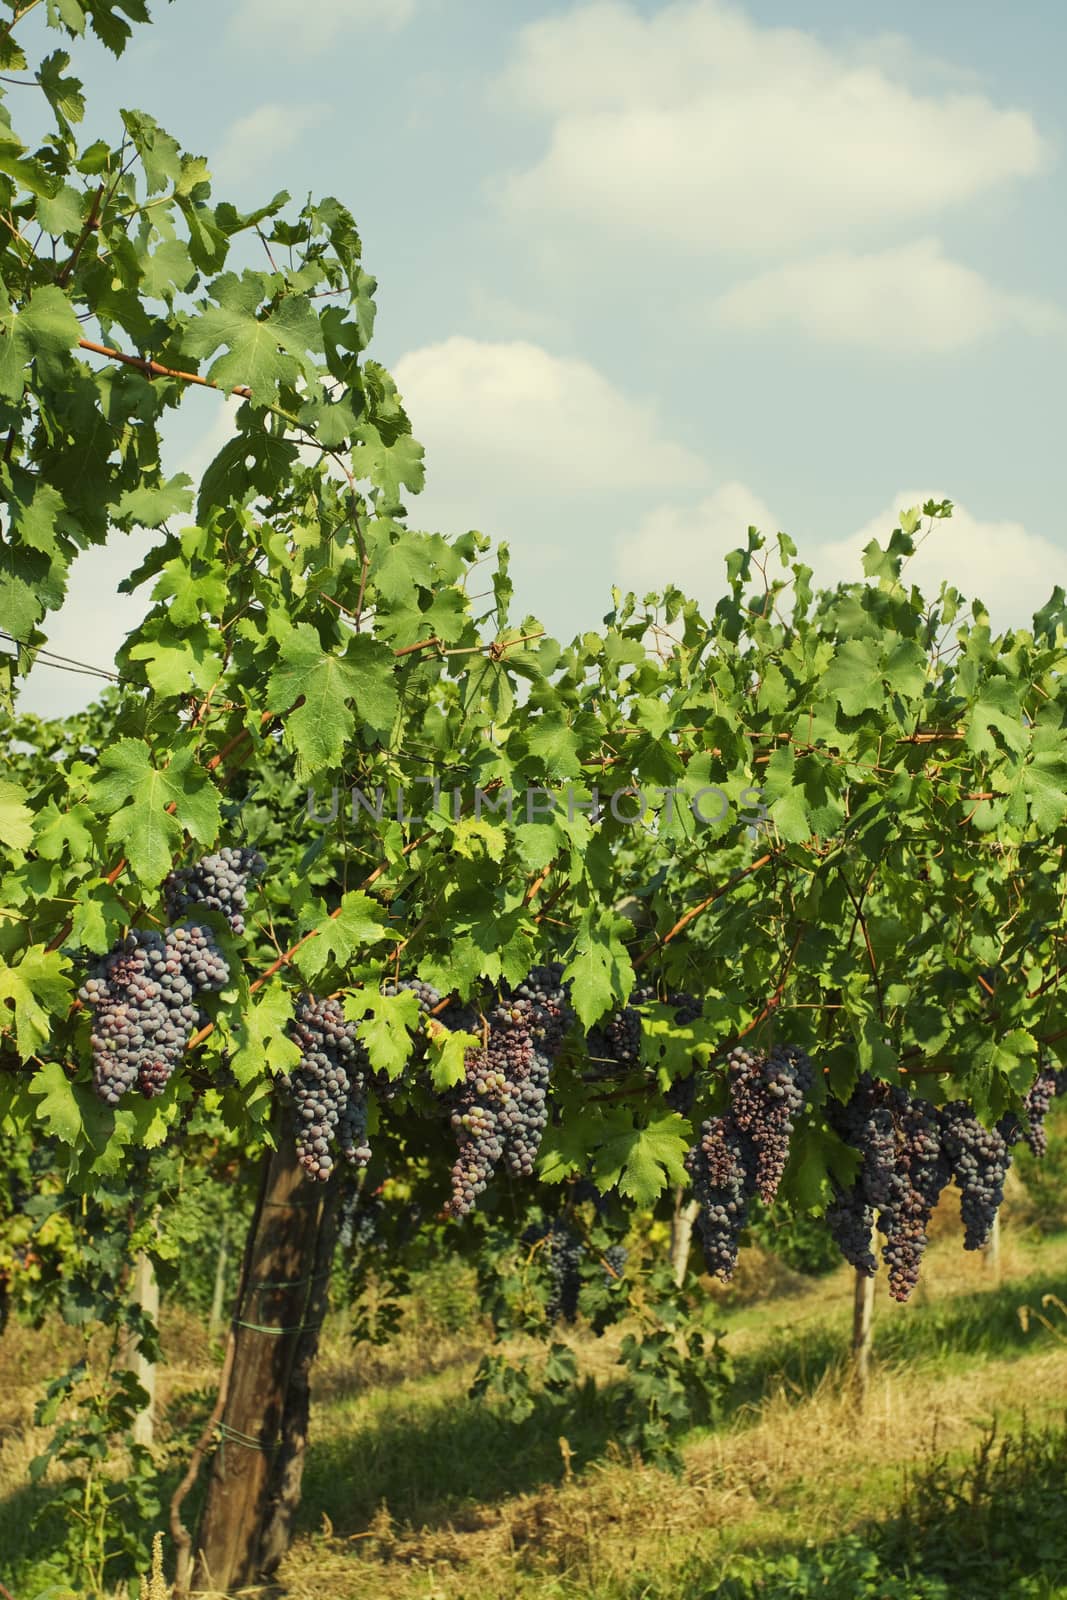 vineyard of grape